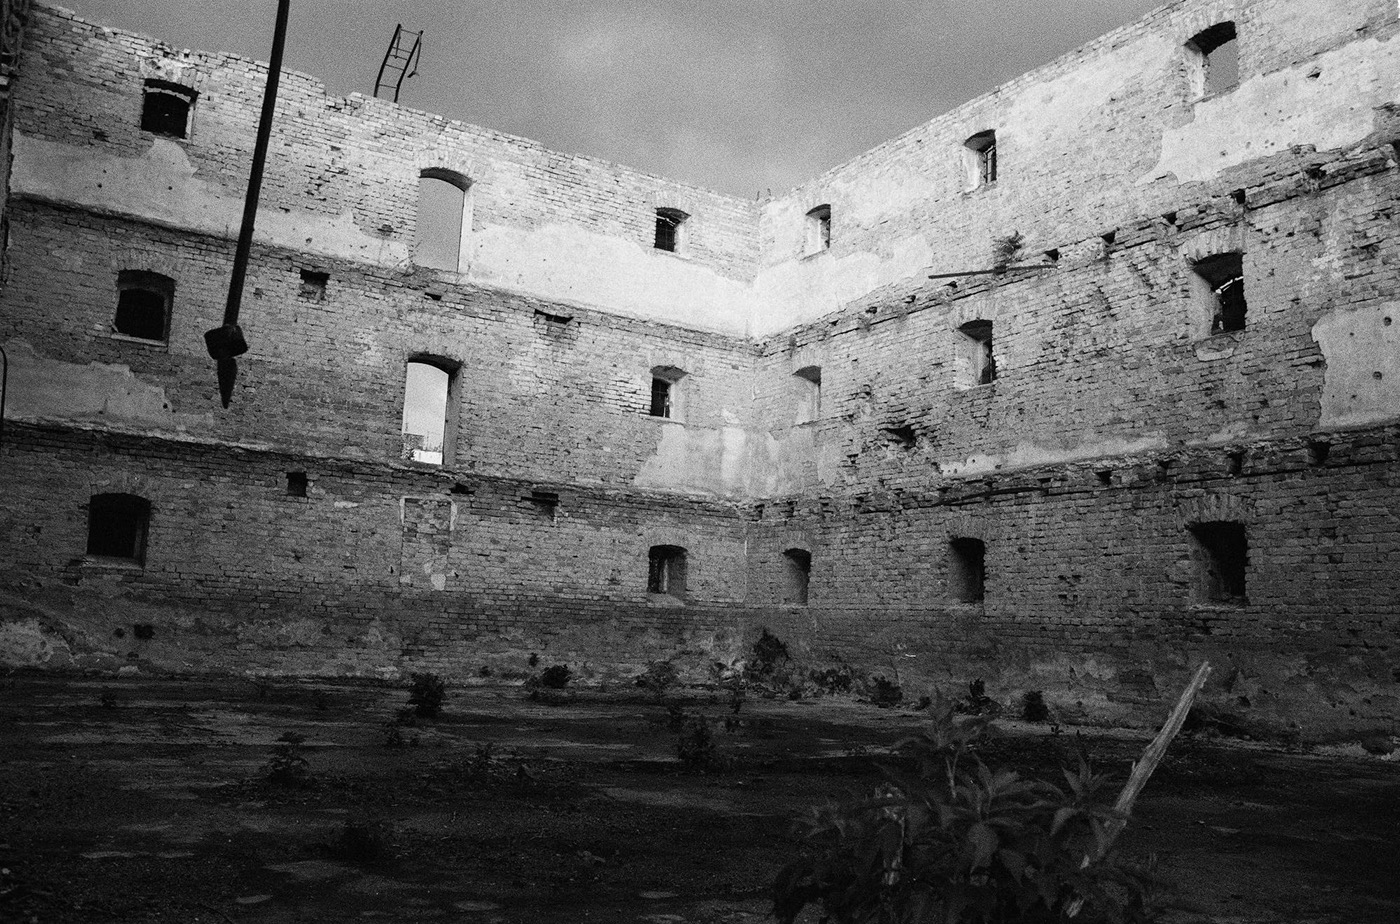 blackandwhite War former yugoslavia exodus 35mm film urbex abandoned place no person